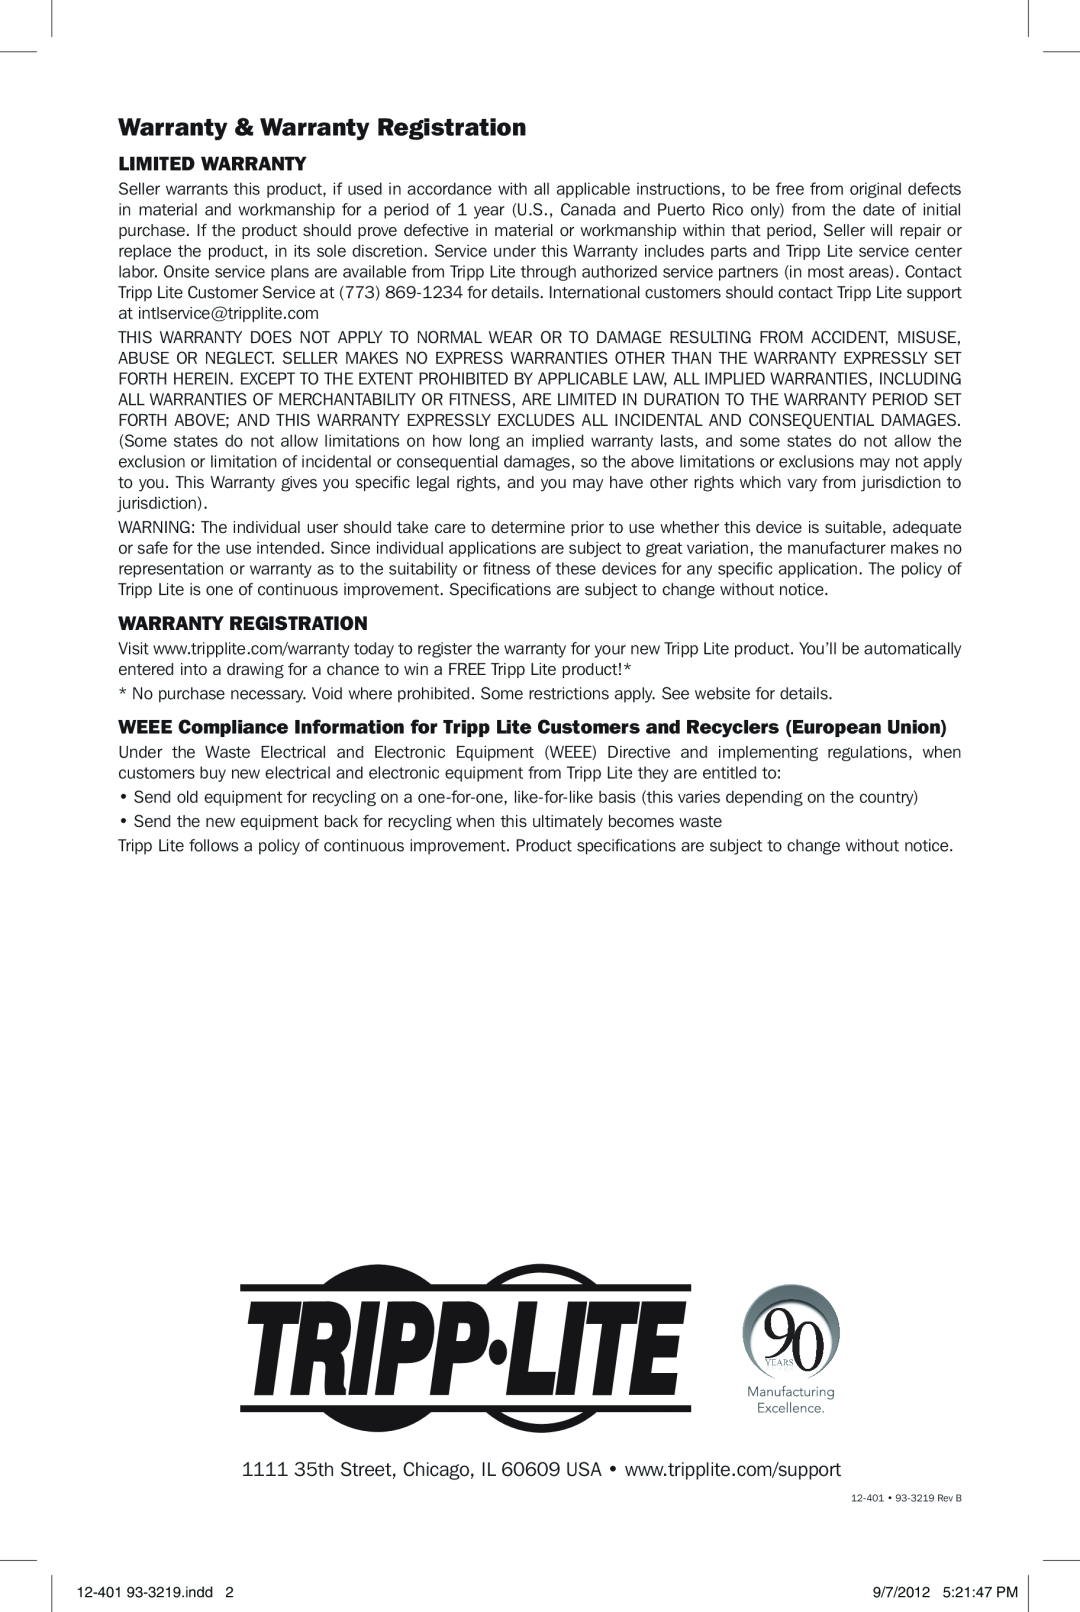 Tripp Lite U336-000-R quick start Warranty & Warranty Registration, Limited Warranty 